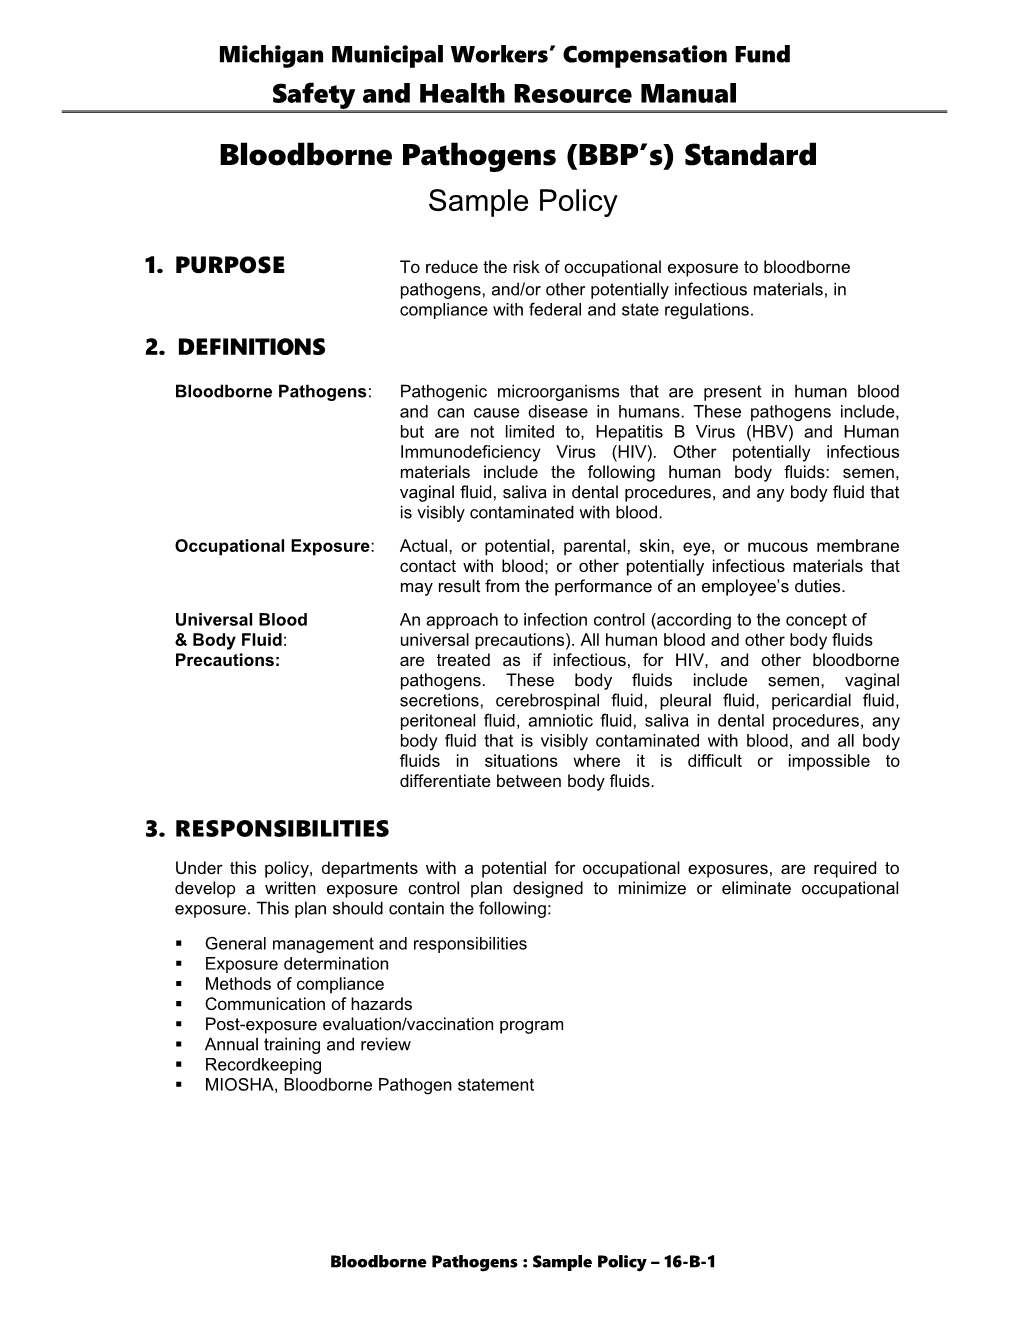 Bloodborne Pathogens (BBP S) Standard